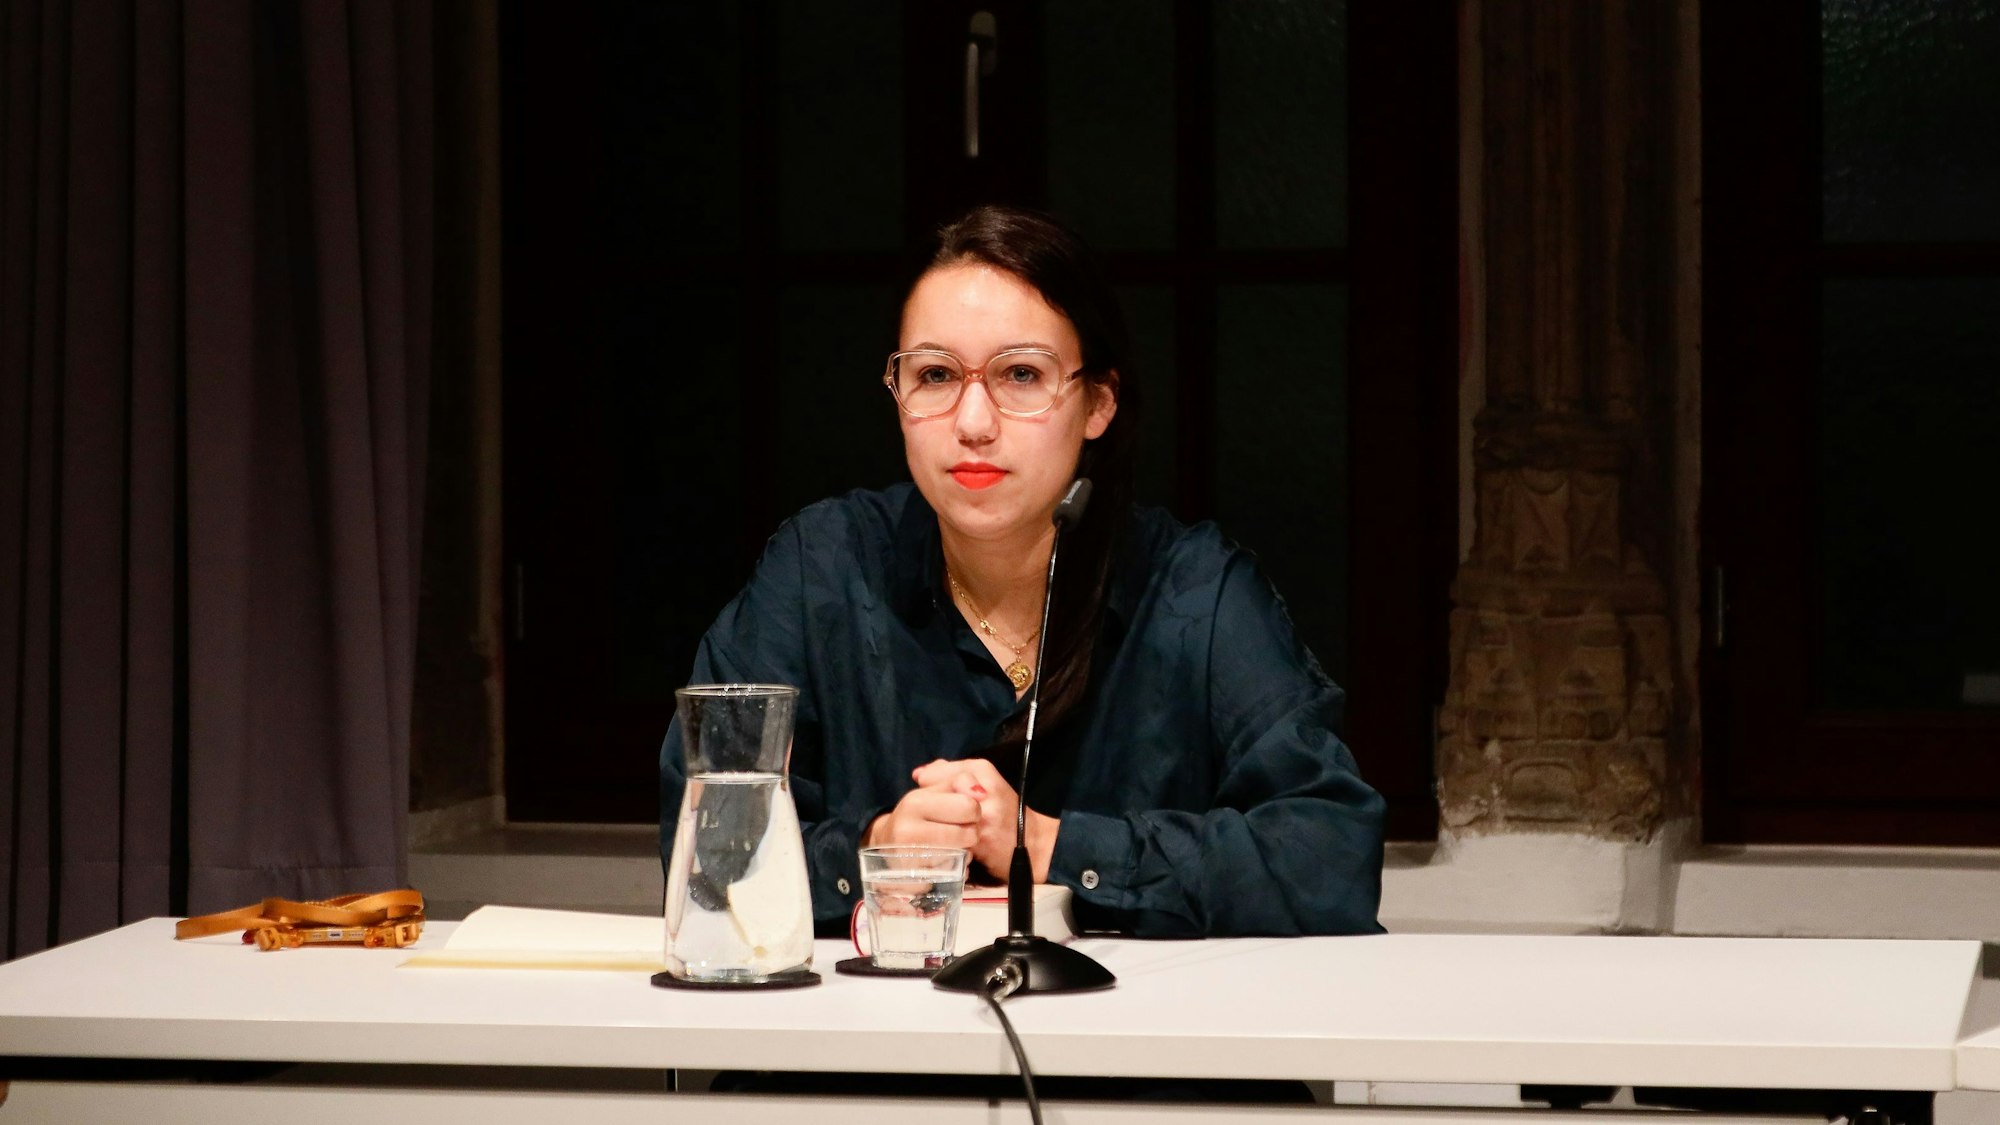 Ronya Othmann sitzt an einem Tisch, vor ihr ist ein Mikrofon aufgestellt. Auf dem Tisch stehen auch ein Glas und eine Karaffe mit Wasser. Die Autorin hat dunkle Haare, trägt eine Brille und eine dunkelgrüne Bluse.